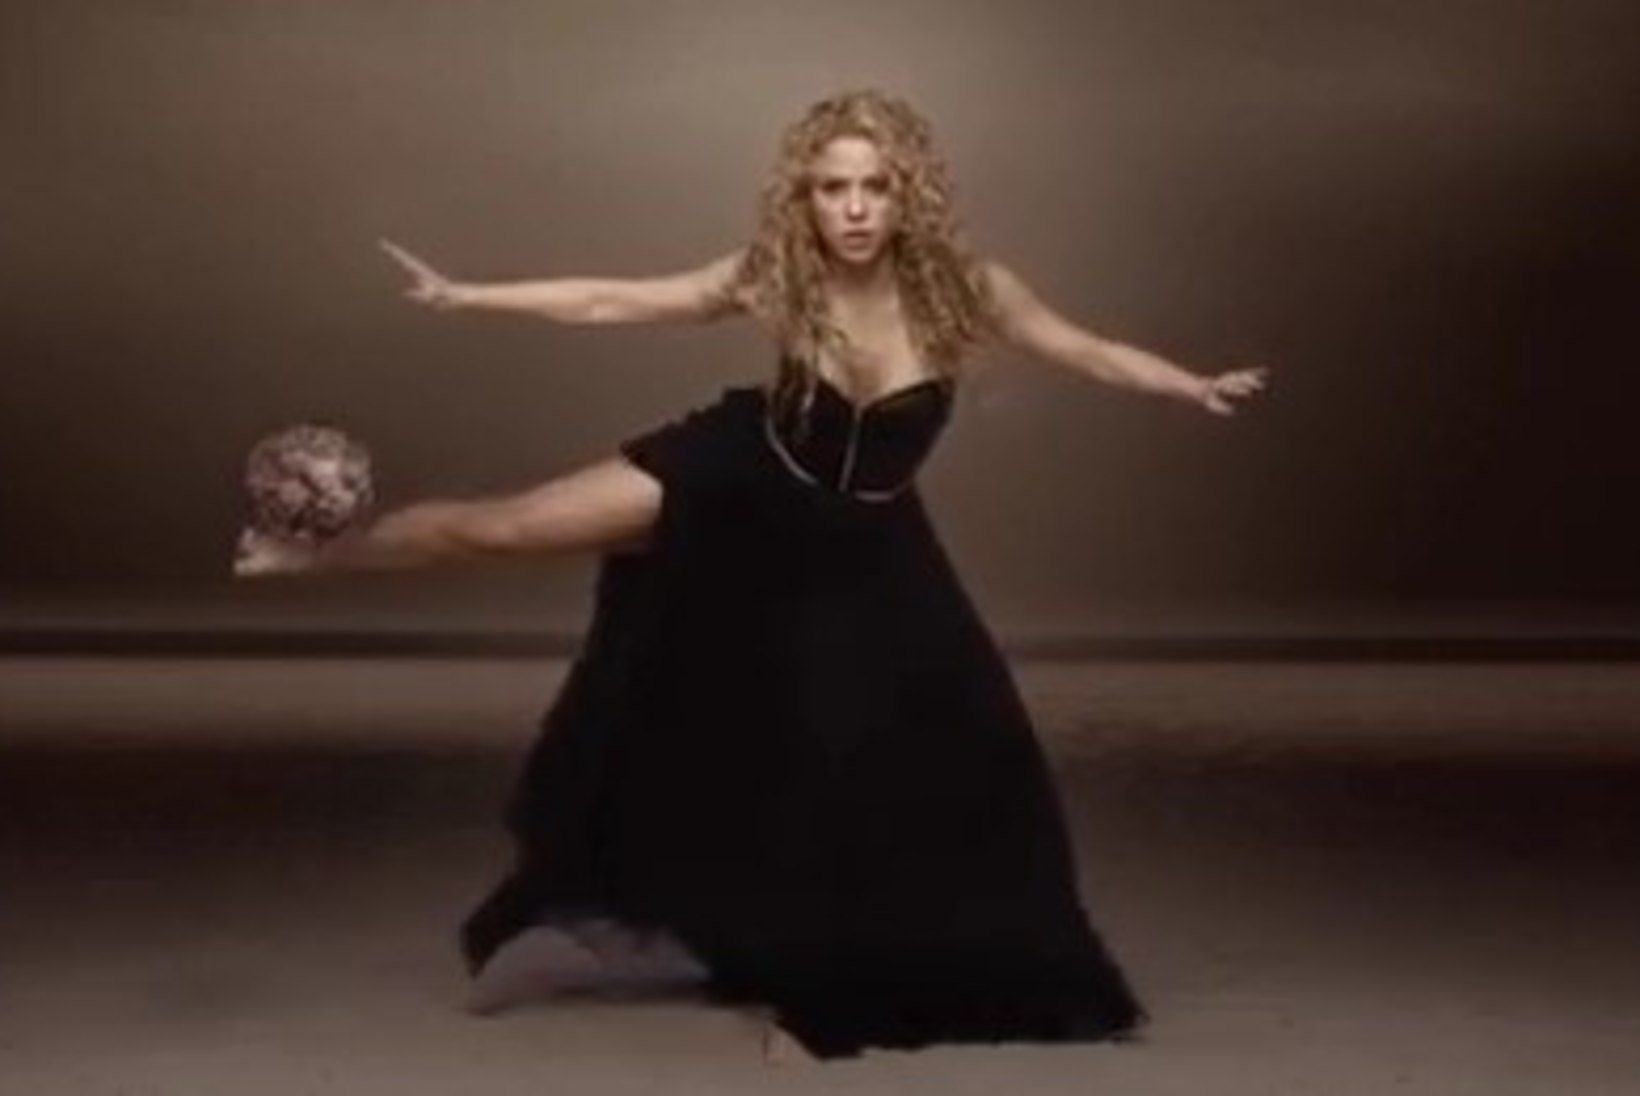 VAATA SEDA: Shakira MM-laulule tehti vinge video